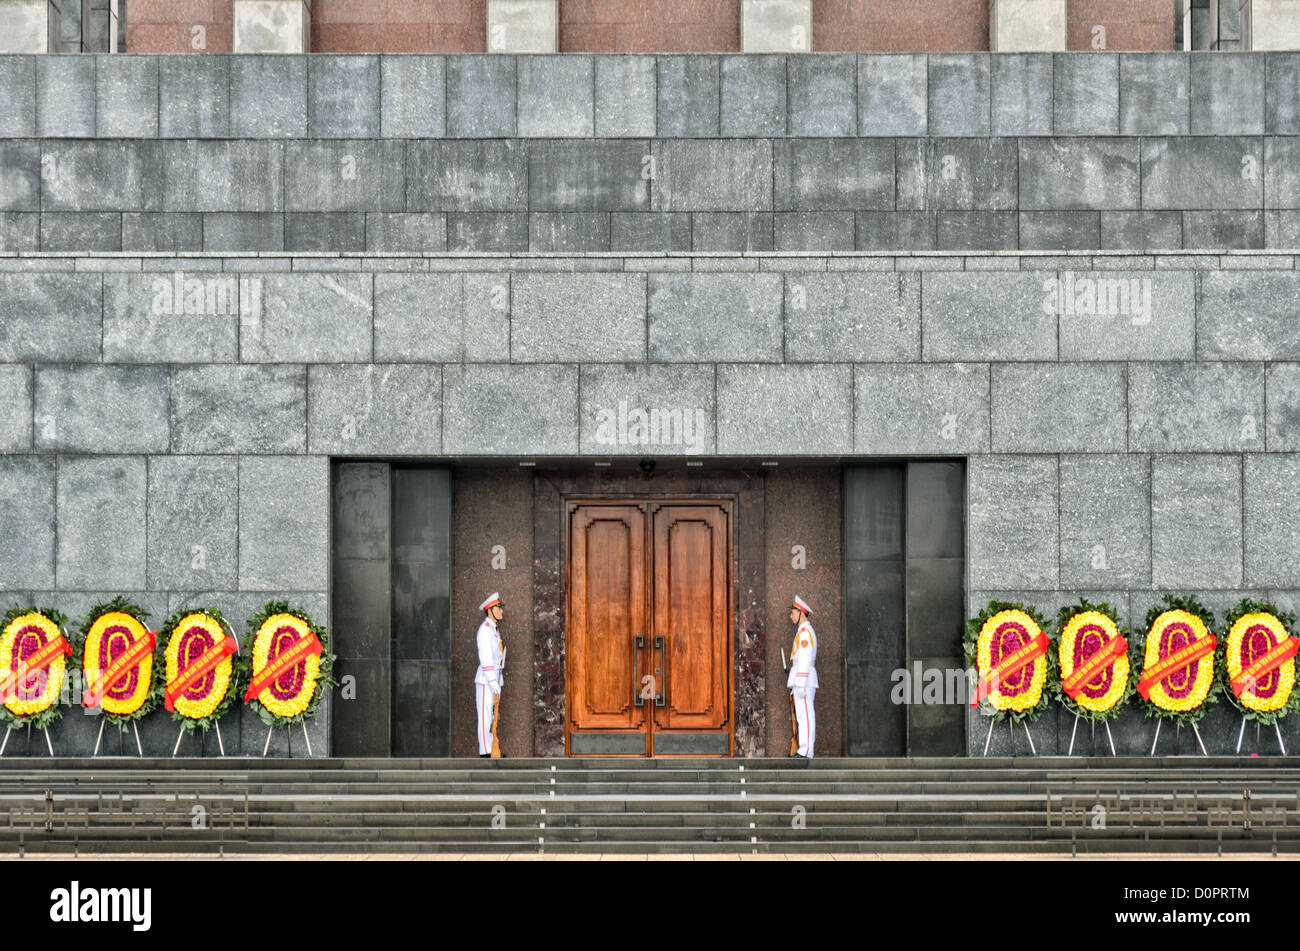 HANOI, Vietnam - due soldati in uniformi di cerimoniale guardia di fronte al mausoleo di Ho Chi Minh, sopraffatte da blocchi di granito dell'edificio. Un memoriale di grandi dimensioni nel centro di Hanoi circondato da Ba Dinh Square, il Mausoleo di Ho Chi Minh ospita il corpo imbalsamato dell ex leader vietnamita e presidente fondatore Ho Chi Minh. Foto Stock